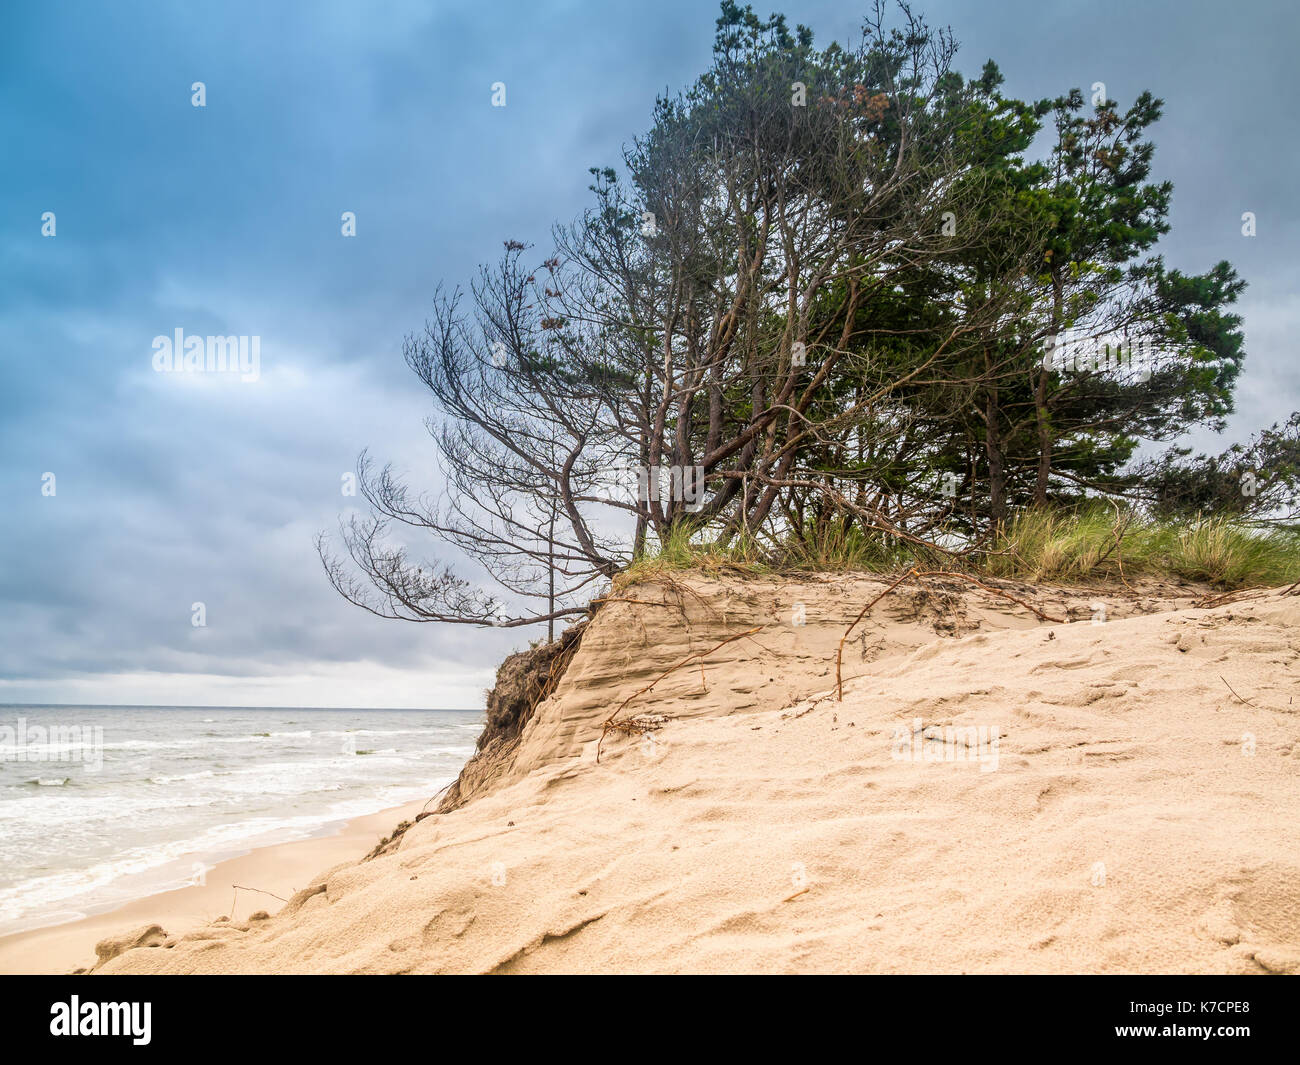 Coastal Sand dune, auf dem Weg zur bewegten dune Wydma Czolpinska im Slowinski-nationalpark zwischen Rowy und Leba, Ostsee, Polen Stockfoto